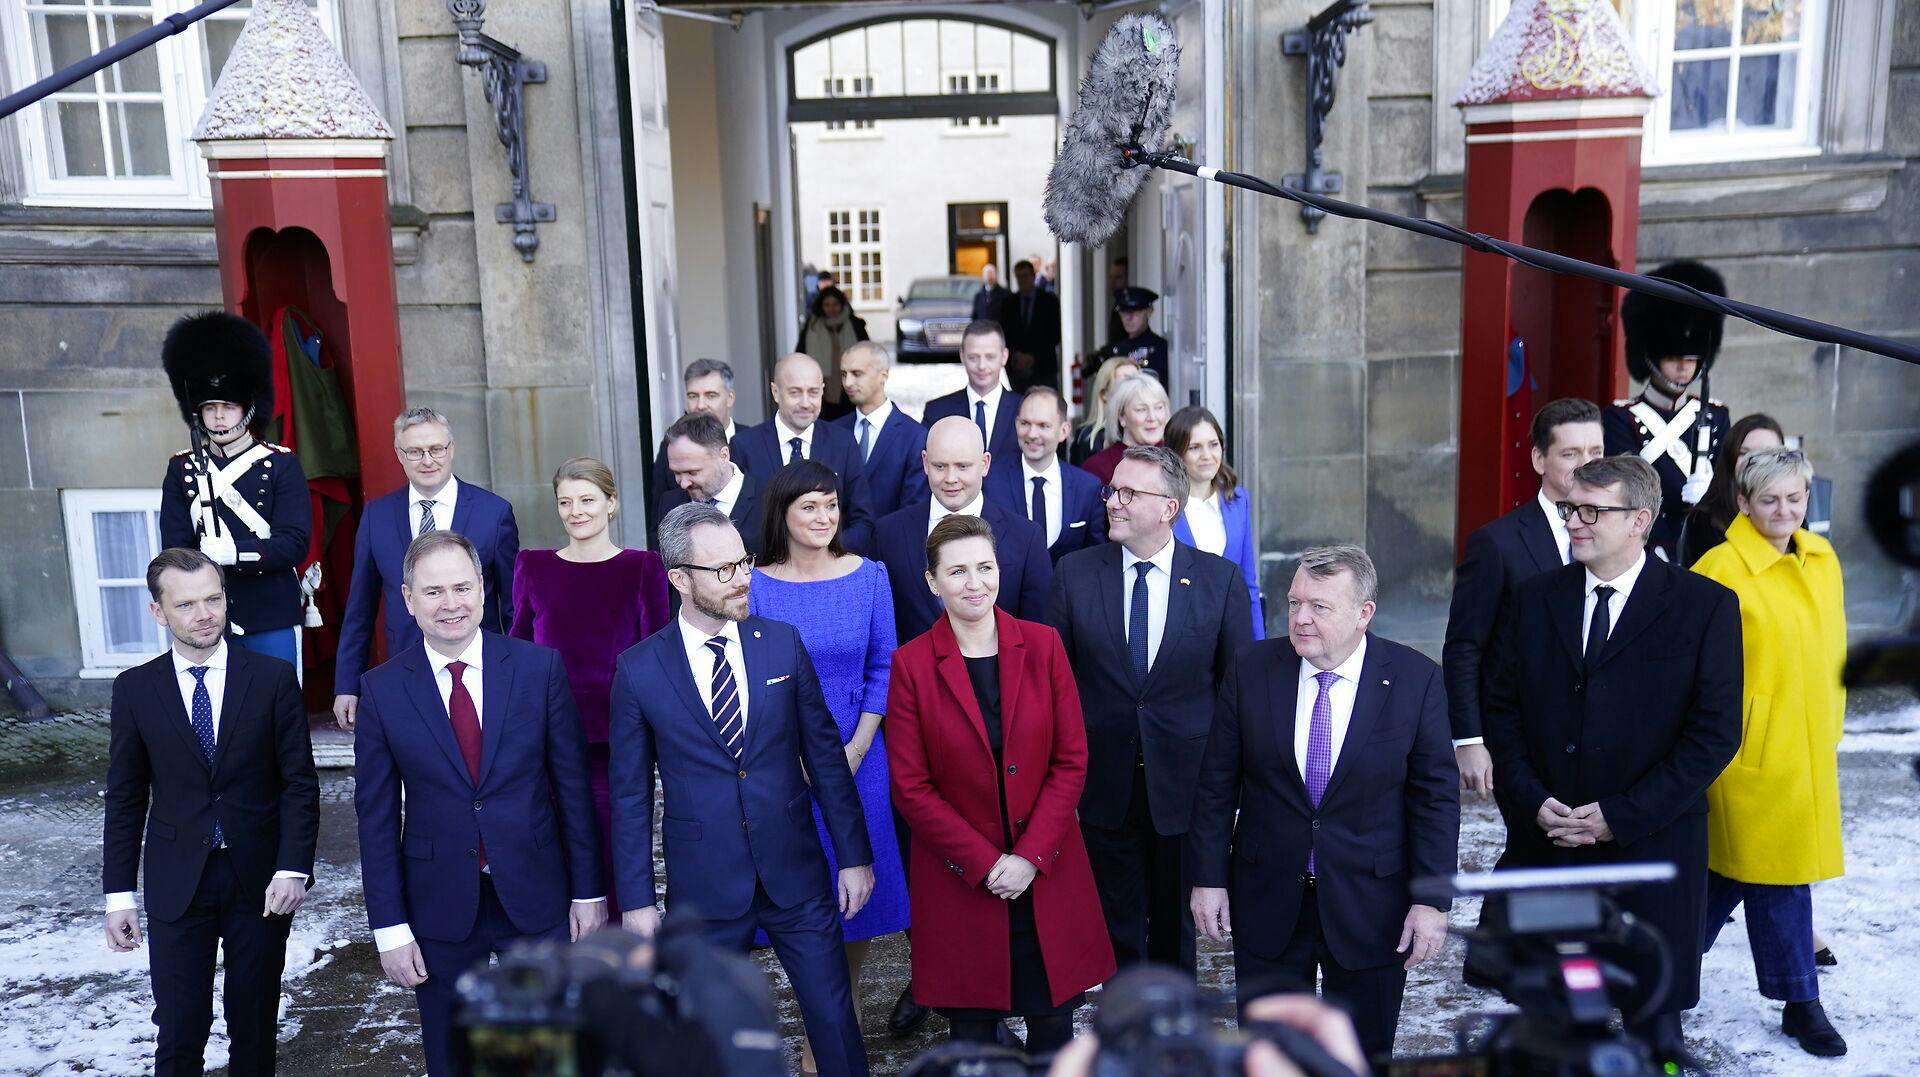 Den nye regering foran Amalienborg, hvor Dronningen modtog dem.&nbsp;